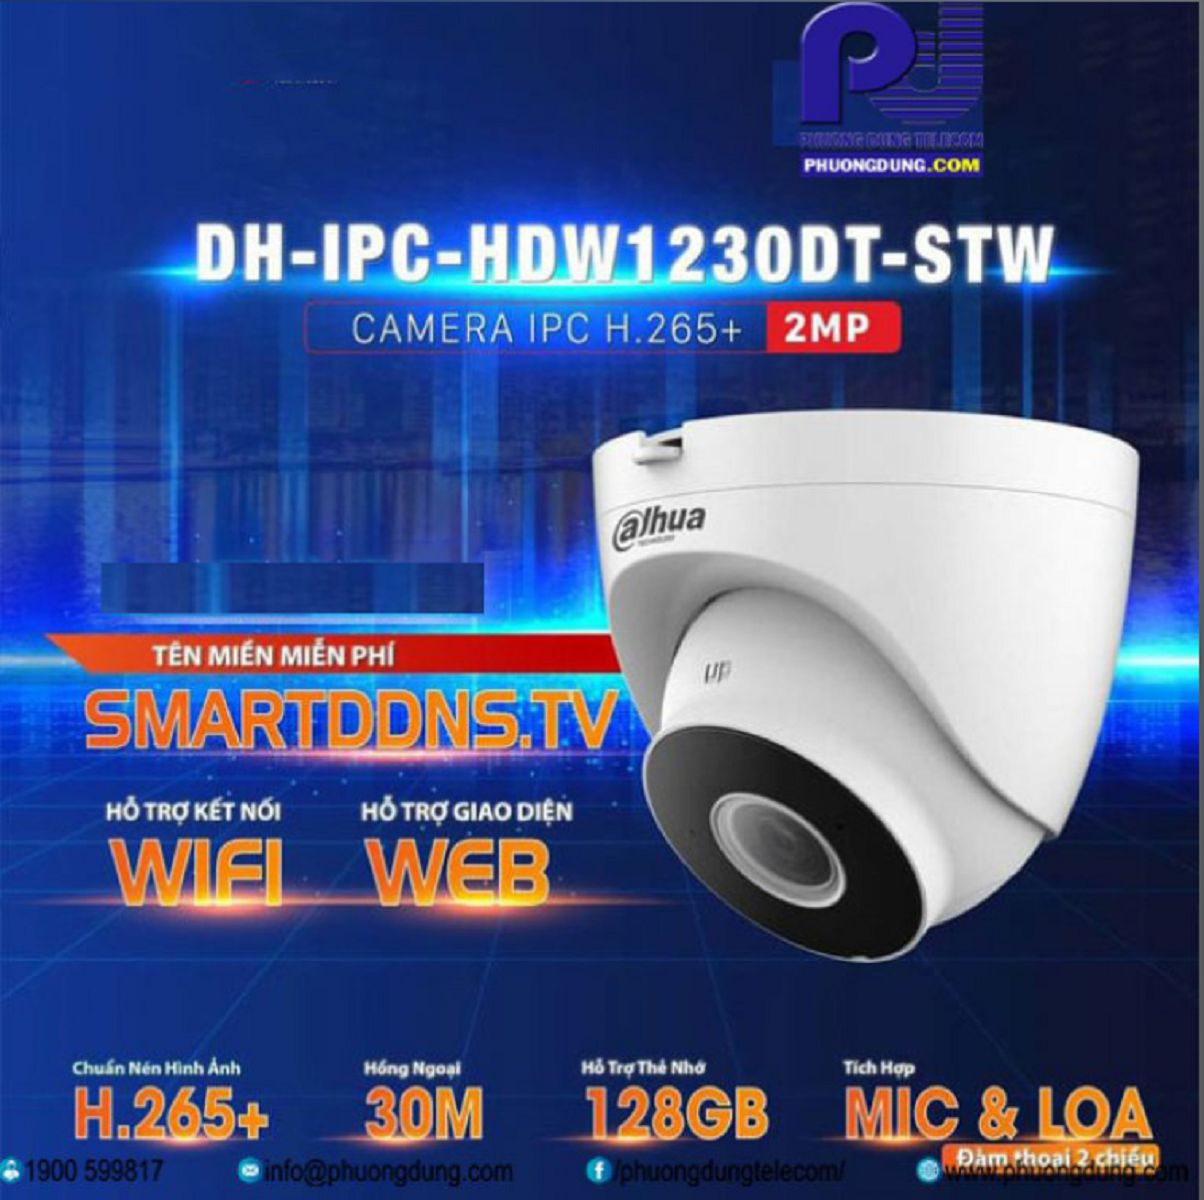 Camera IP WIFI IPC-HDW1230DT-STW 2MP Full HD Của DAHUA-hàng chính hãng